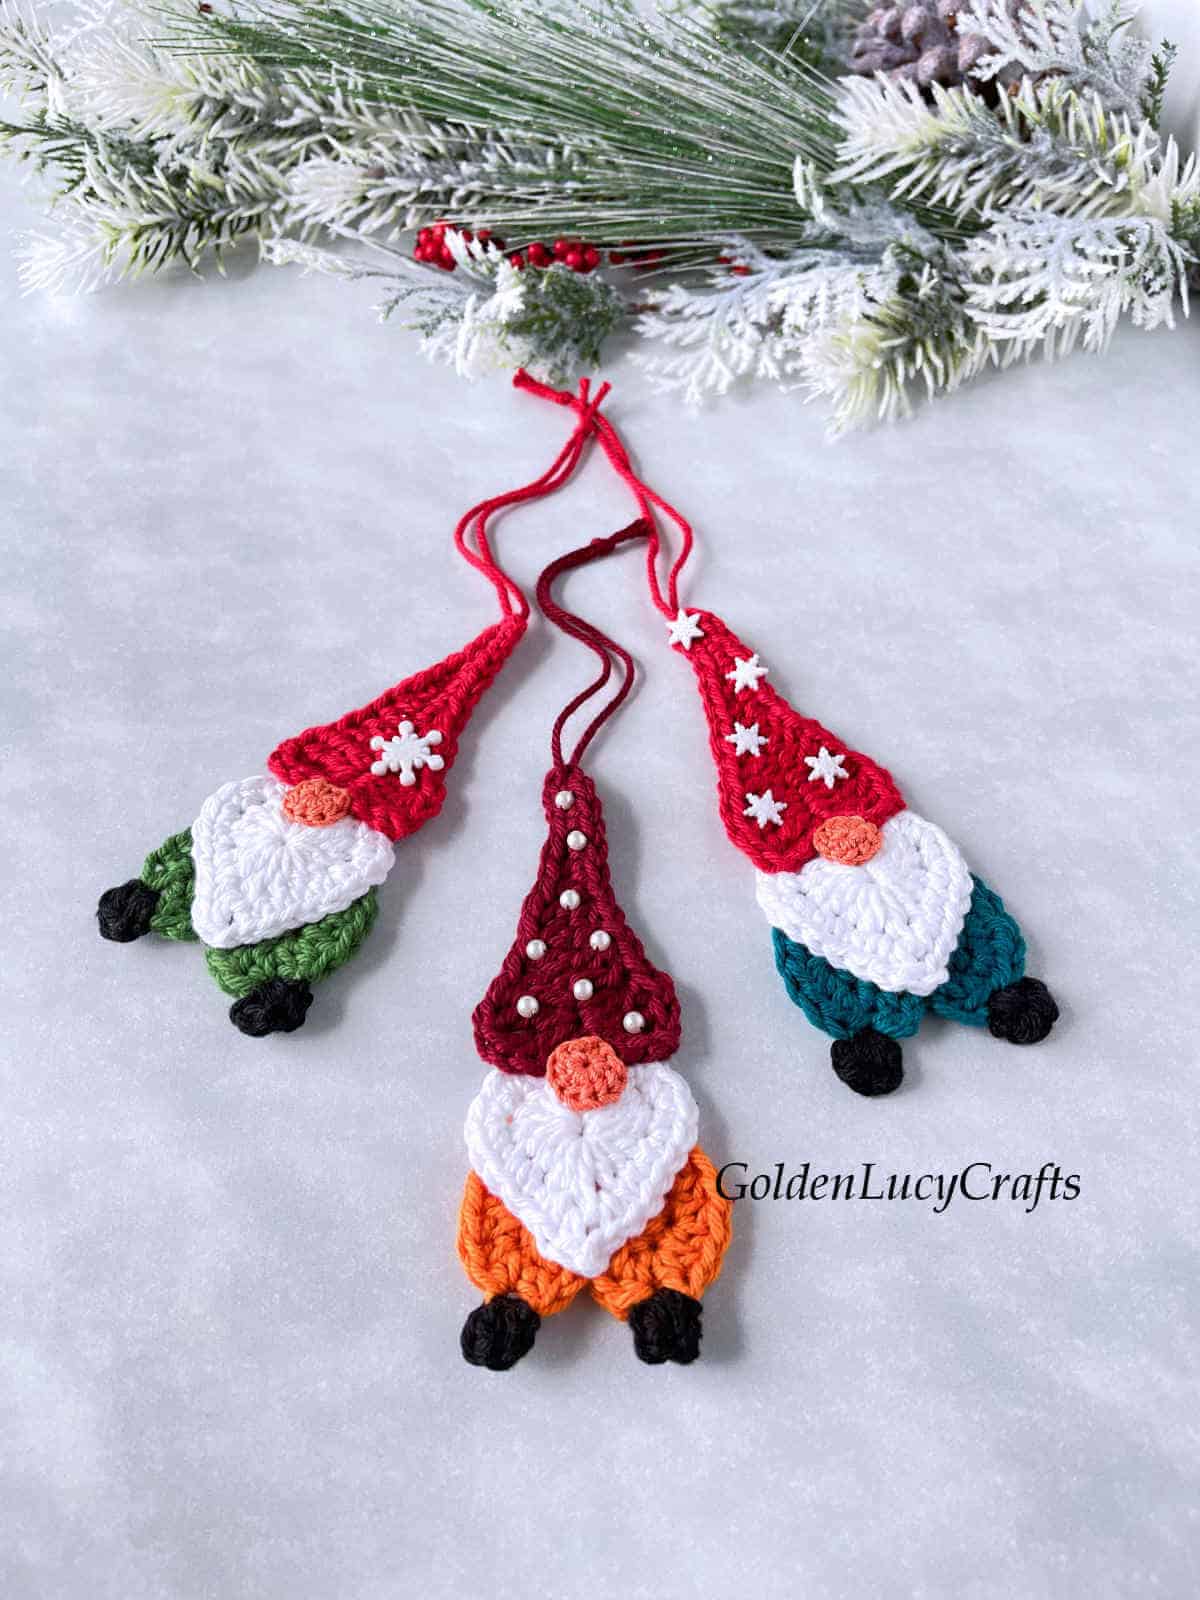 Three crocheted Christmas gnomes.